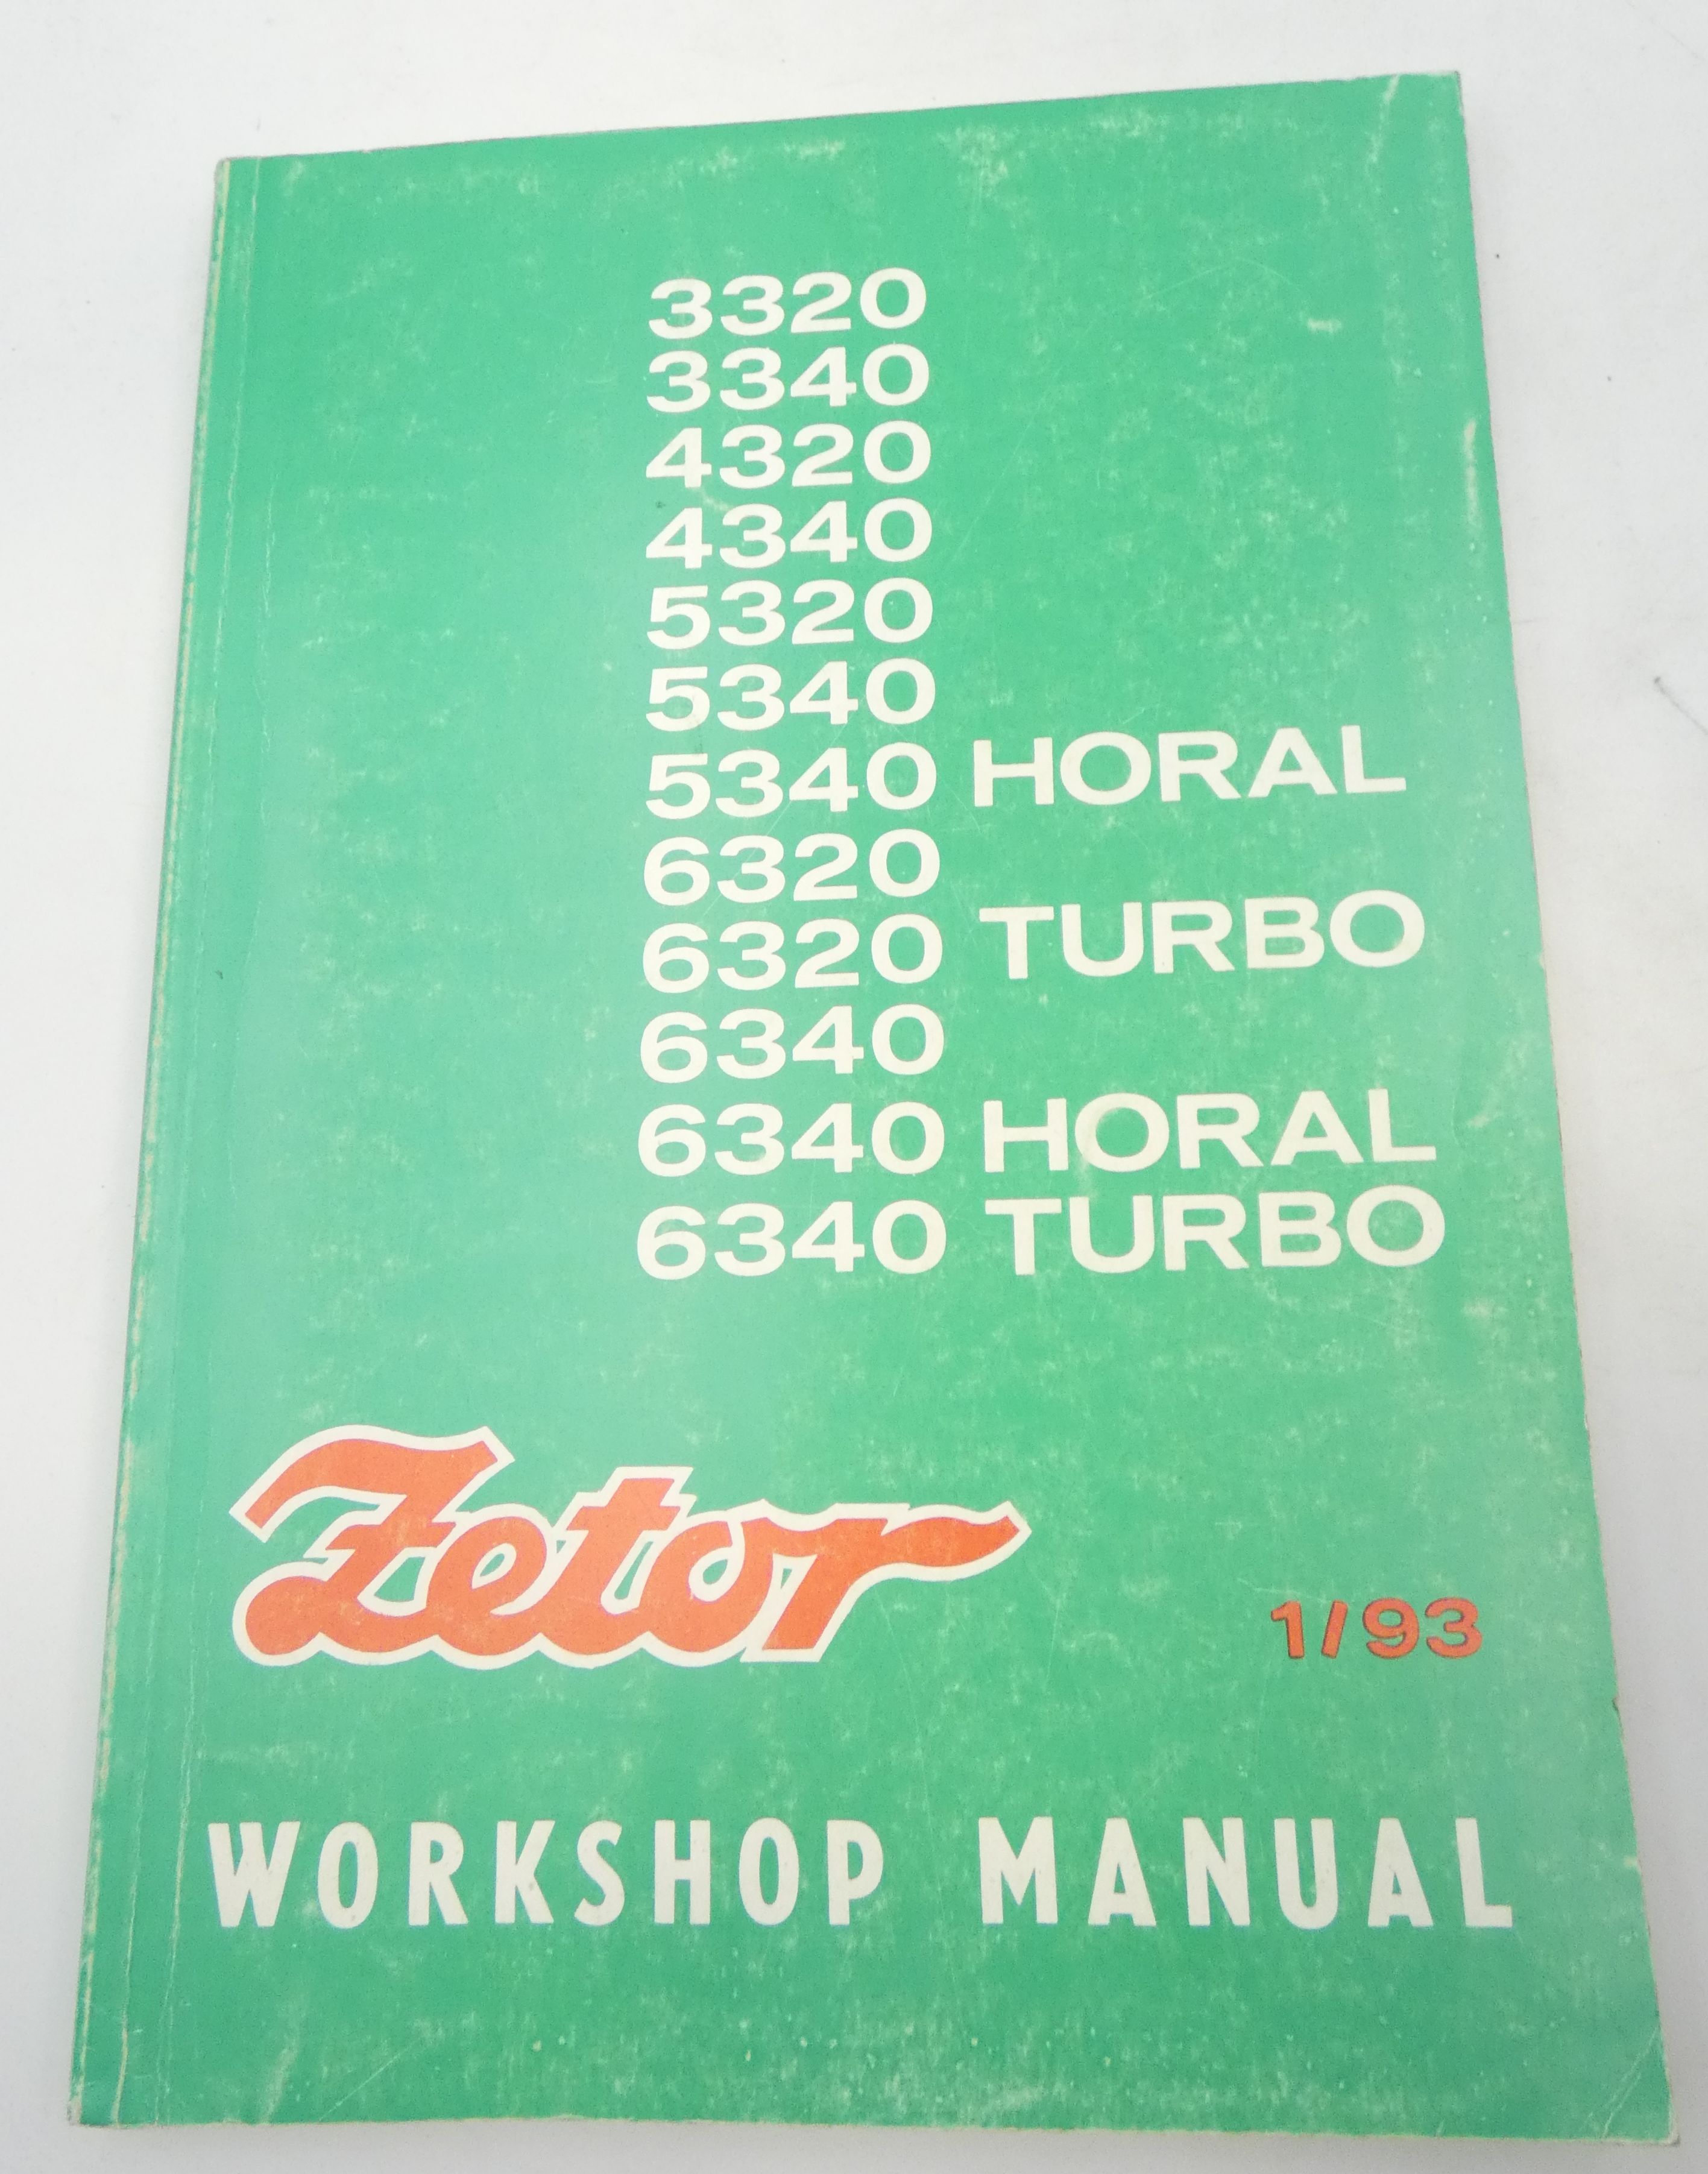 Zetor 3320, 3340, 4320, 4340, 5320, 5340, 5340 Horal, 6320, 6320 Turbo, 6340, 6340 Horal, 6340 Turbo wokrshop manual